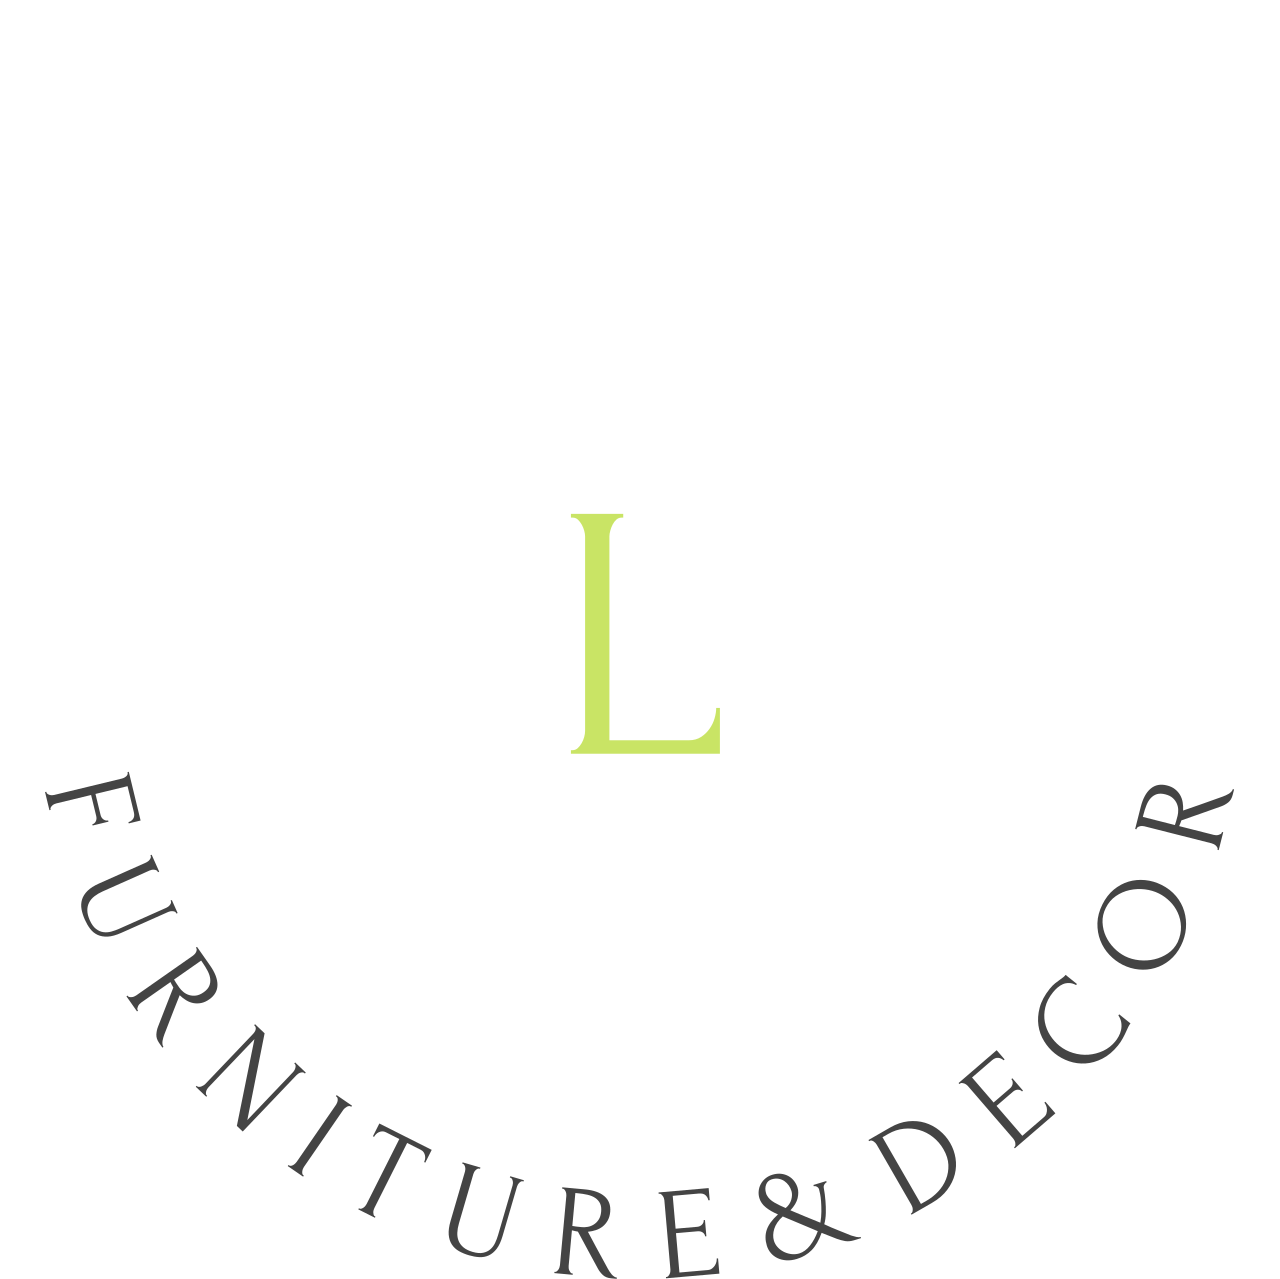 LINE & COLOR's logo